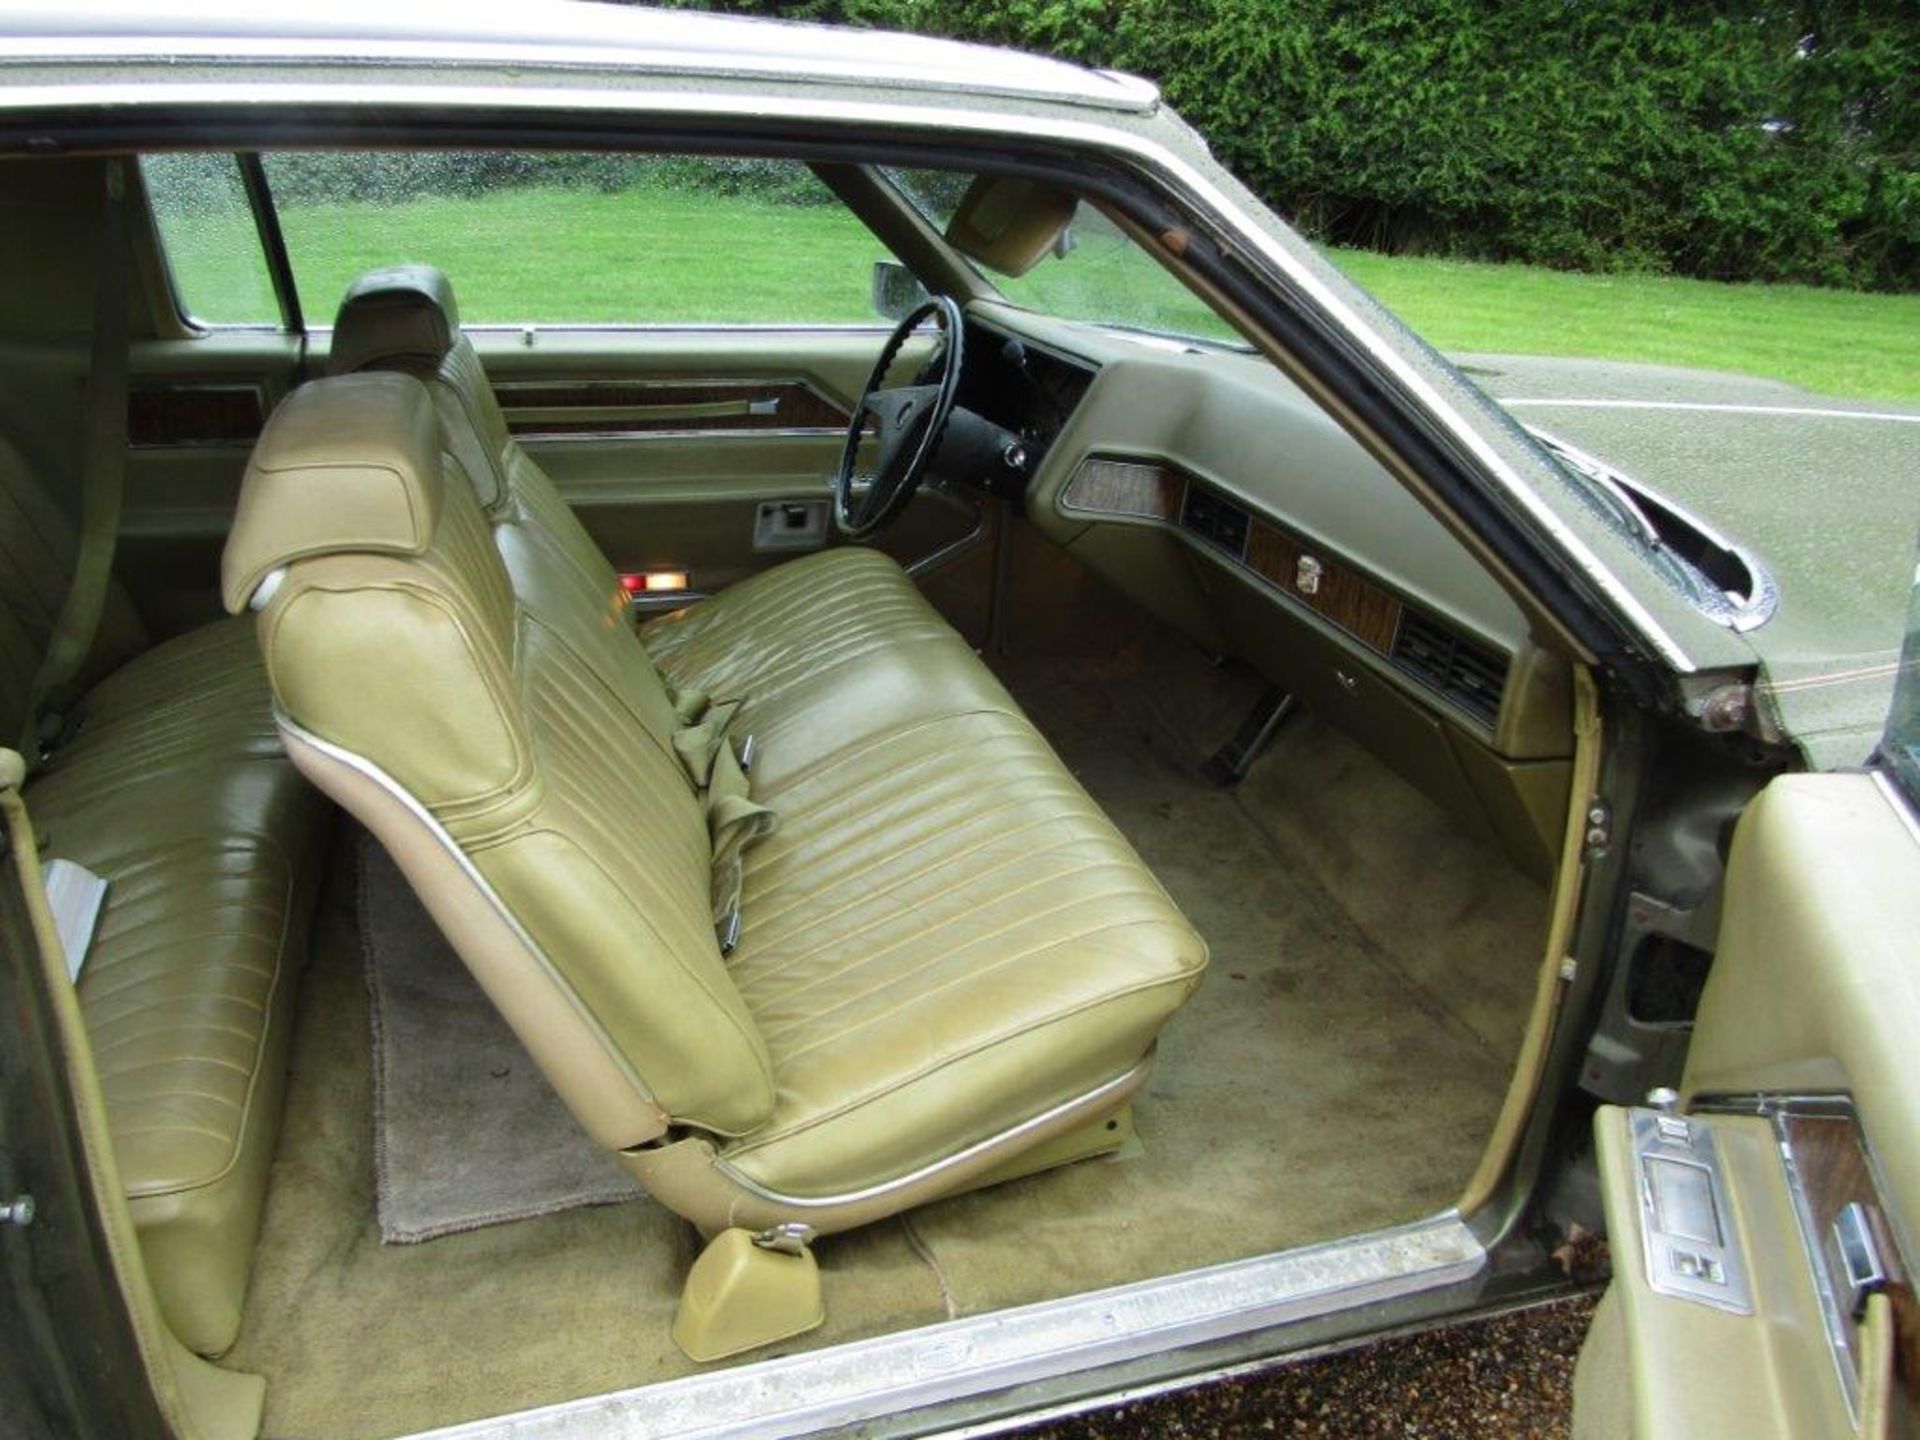 1970 Cadillac Eldorado Coupe LHD - Image 11 of 22